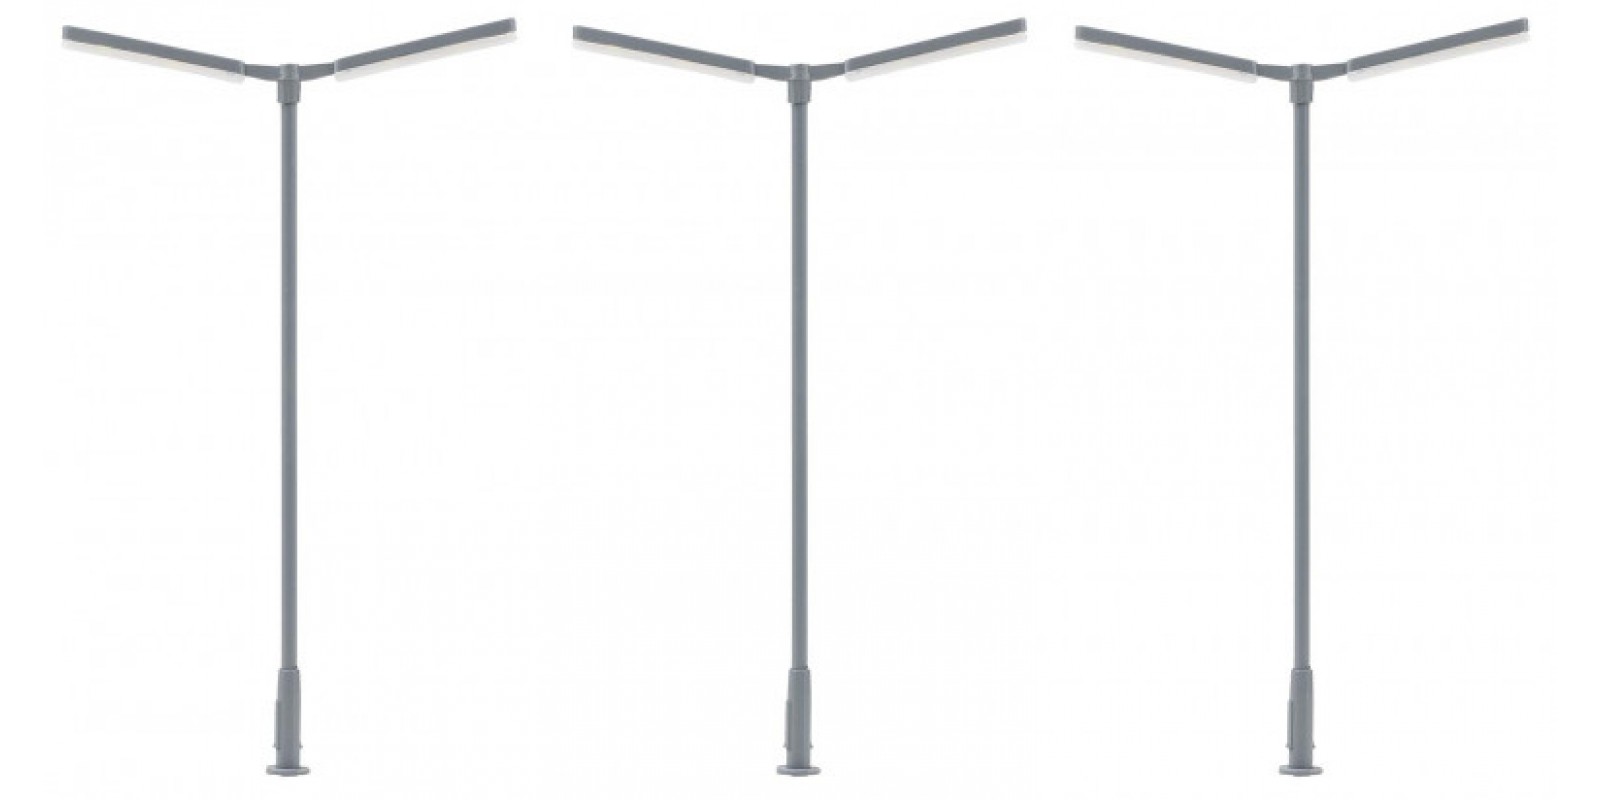 FA180122 LED Cross-mast light, dual-arm, cold white, 3 pieces